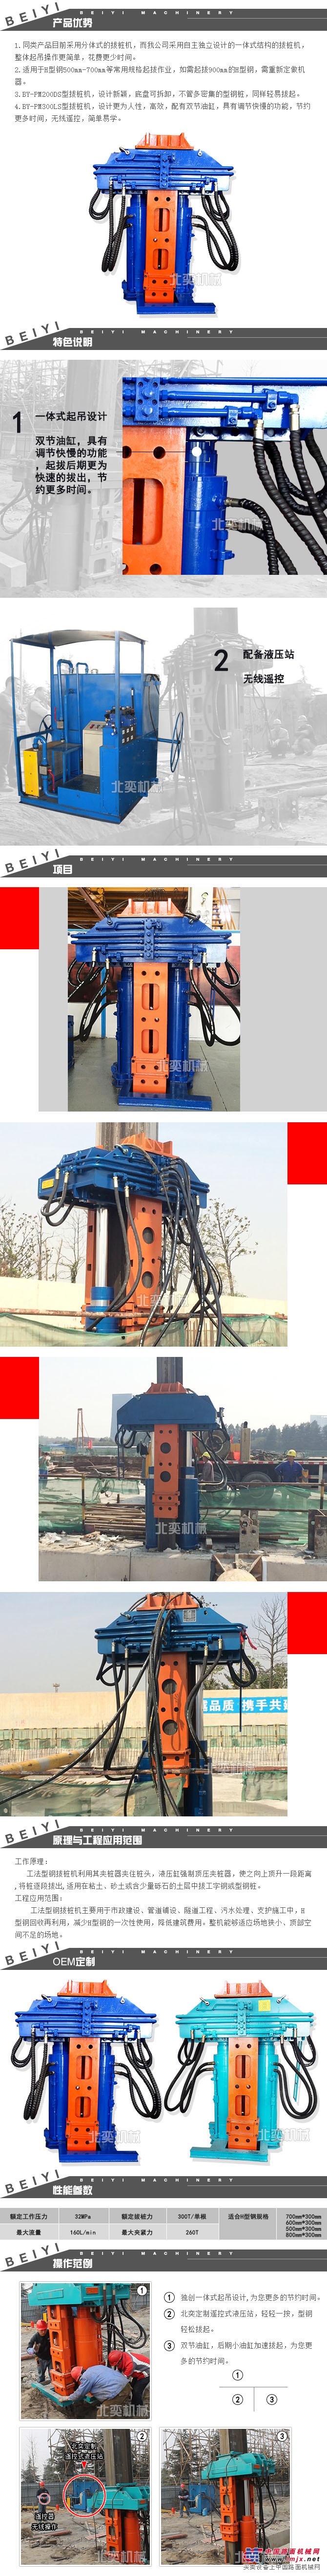 工法桩液压拔桩机 建筑工程拔桩设备